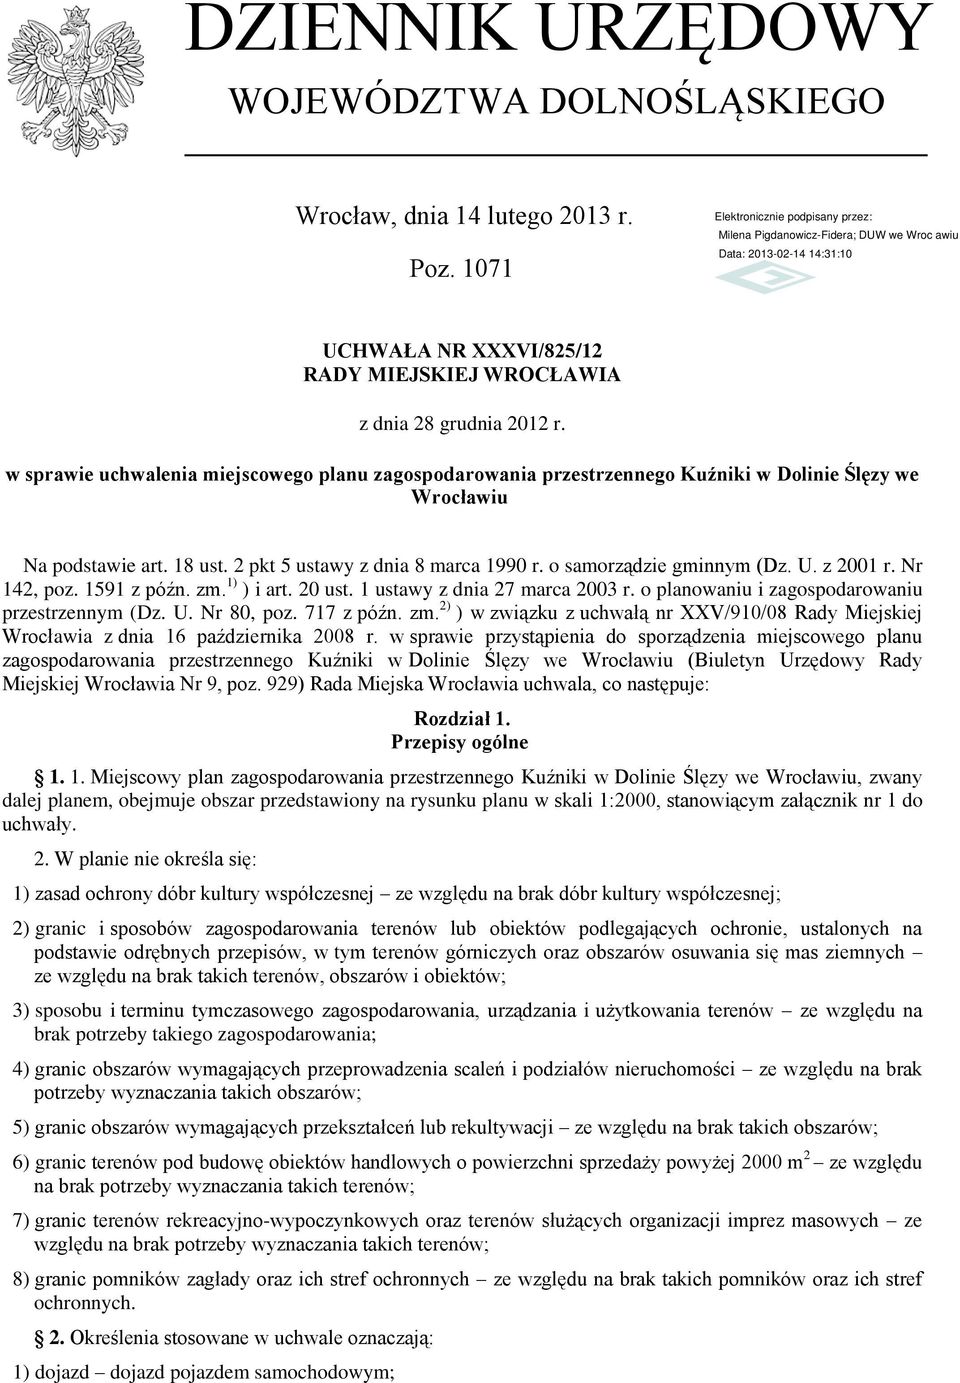 U. z 2001 r. Nr 142, poz. 1591 z późn. zm. 1) ) i art. 20 ust. 1 ustawy z dnia 27 marca 2003 r. o planowaniu i zagospodarowaniu przestrzennym (Dz. U. Nr 80, poz. 717 z późn. zm. 2) ) w związku z uchwałą nr XXV/910/08 Rady Miejskiej Wrocławia z dnia 16 października 2008 r.